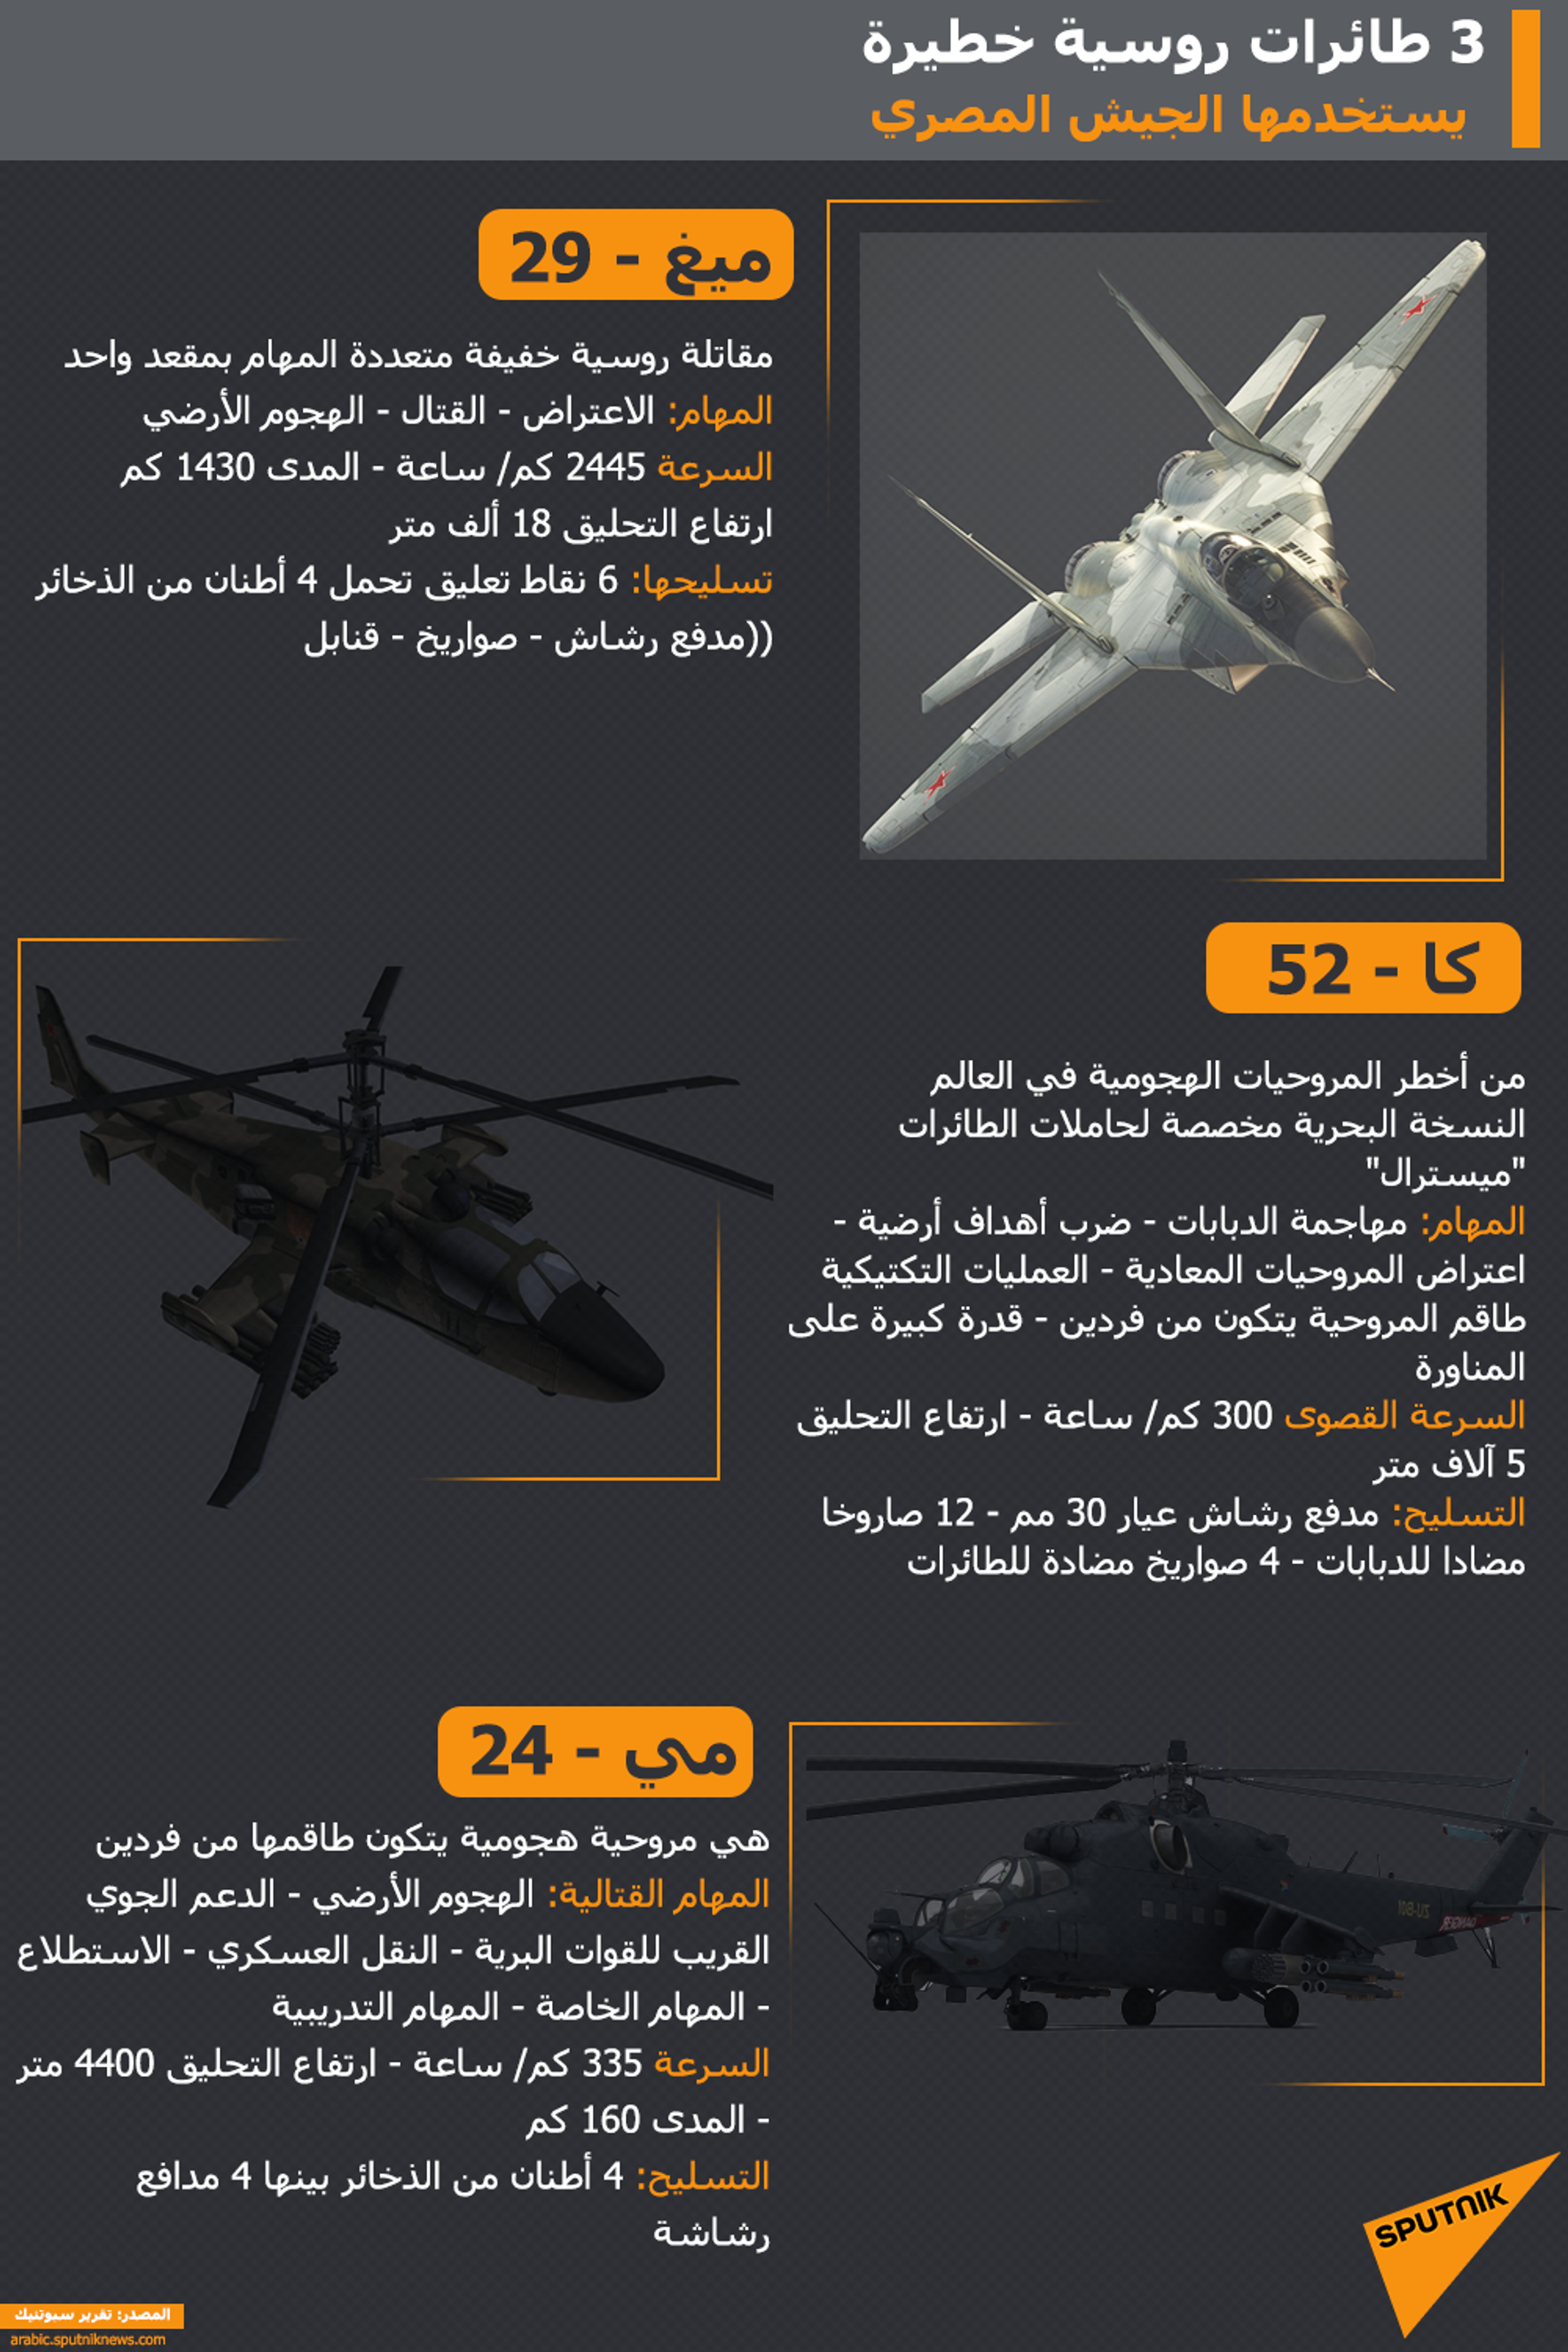 3 طائرات روسية خطيرة ظهرت خلال حديث السيسي عن الجيش المصري - سبوتنيك عربي, 1920, 07.09.2022